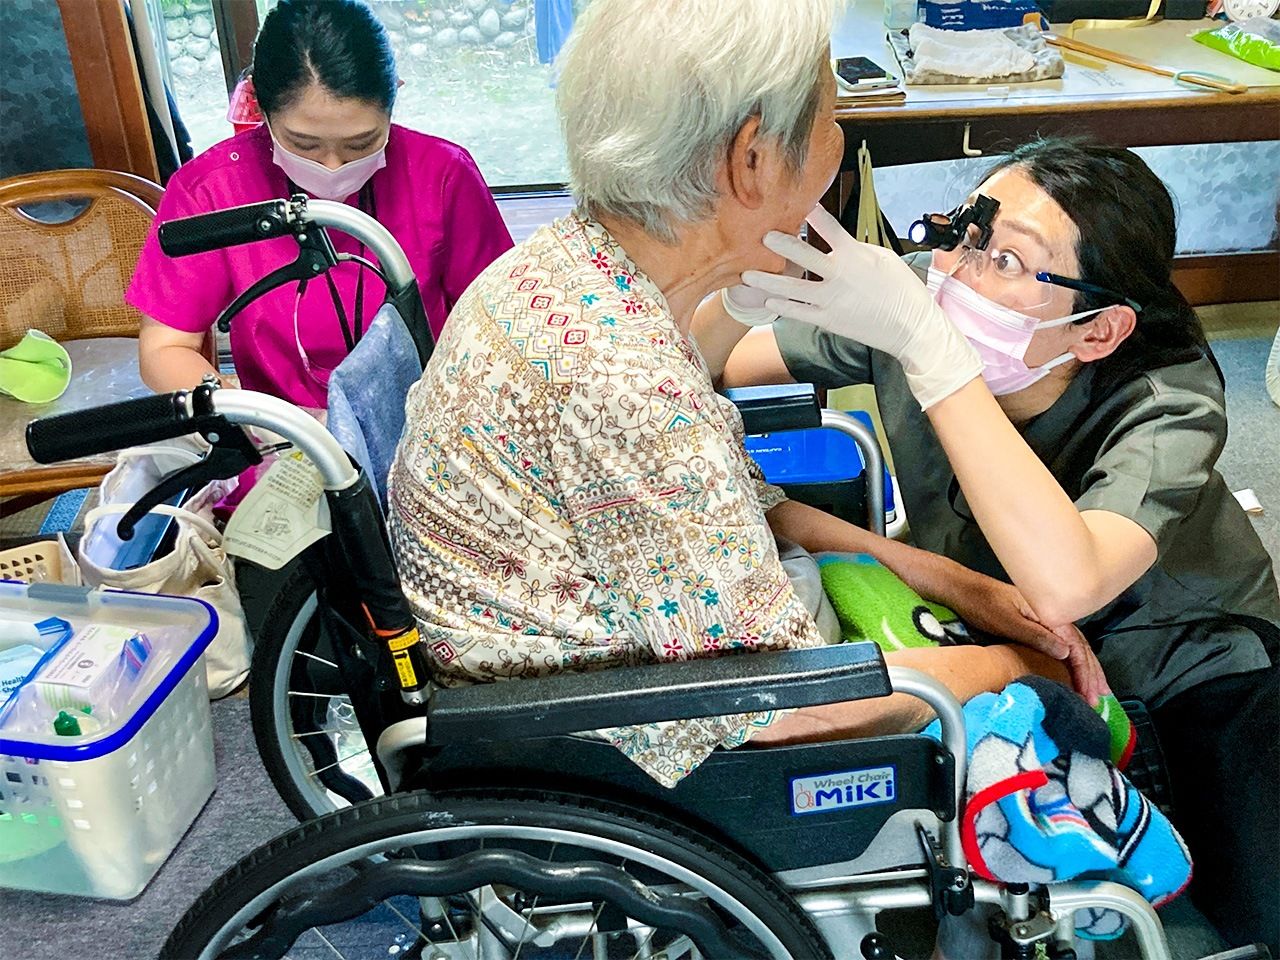 طبيبة الاسنان تتفحص أحد المرضى خلال زيارة منزلية. (© دايدو أتسوشي)